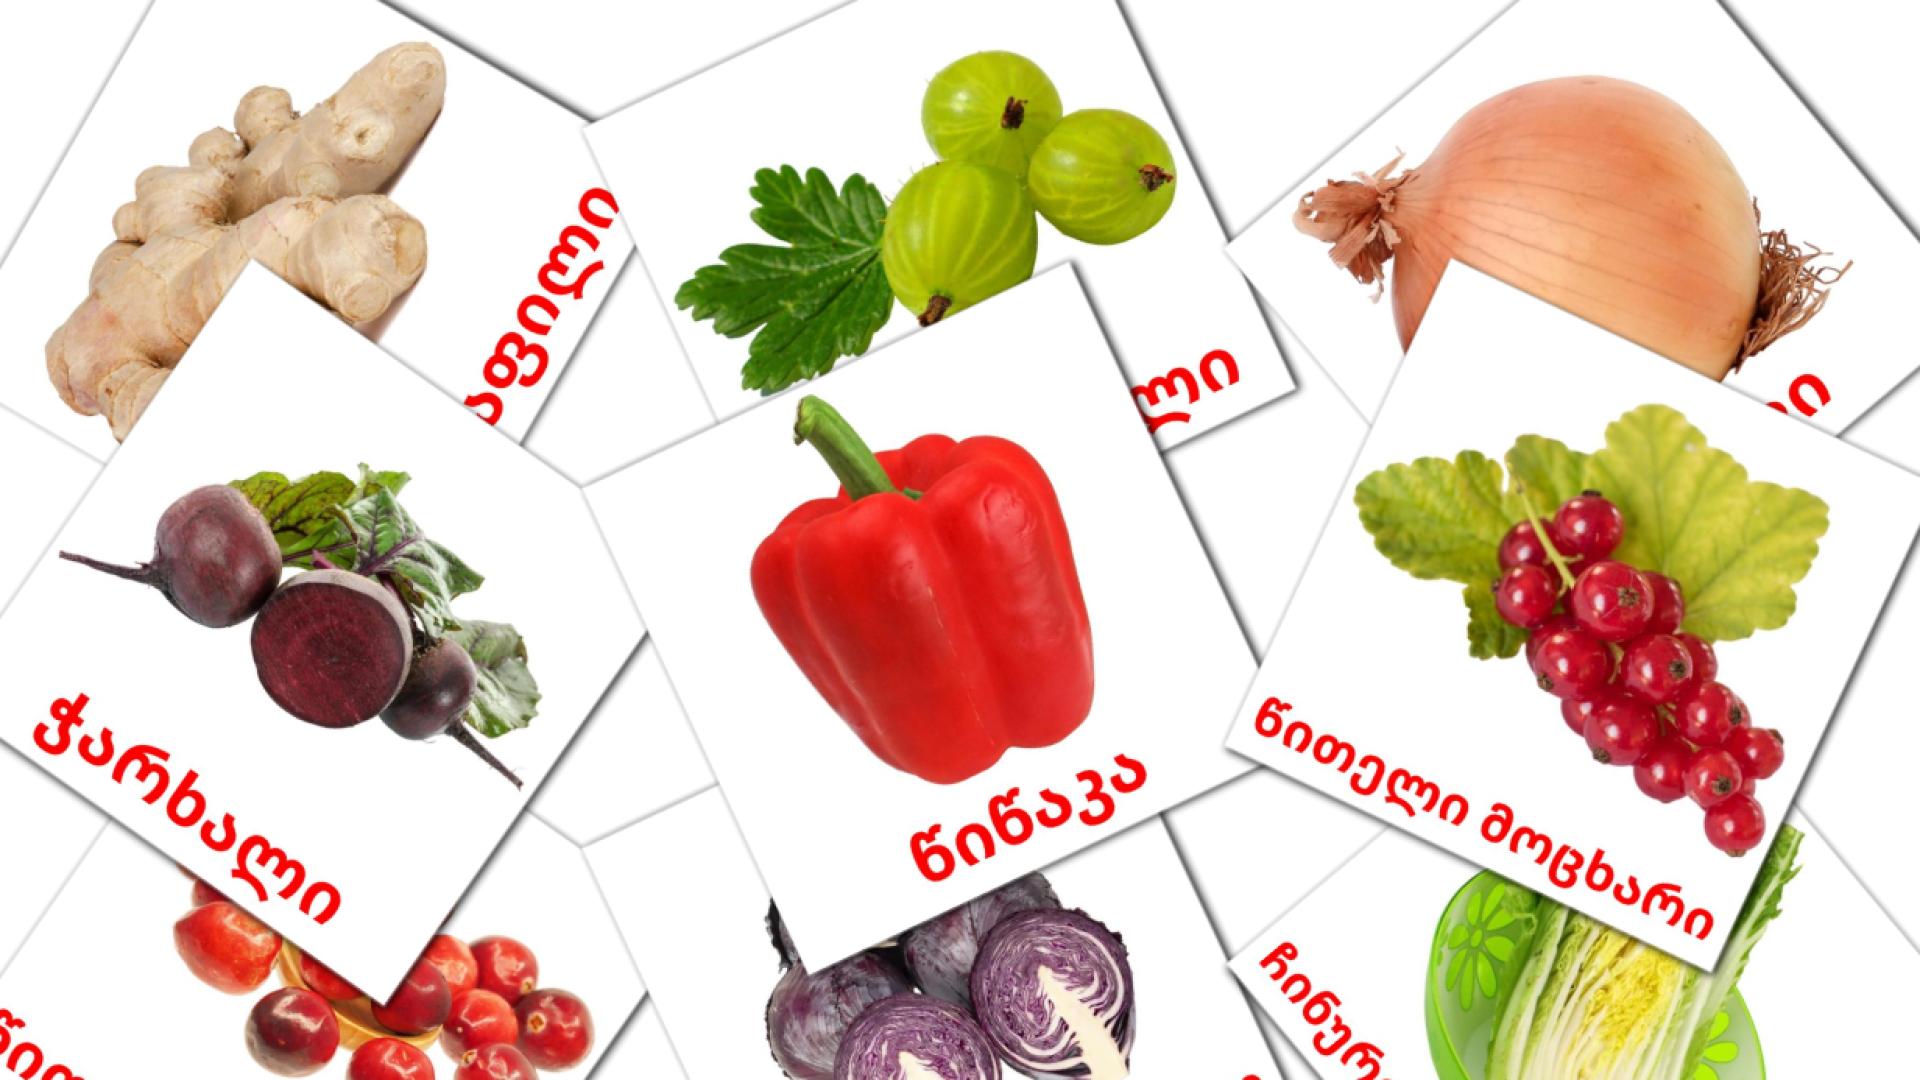 georgiano tarjetas de vocabulario en საკვები